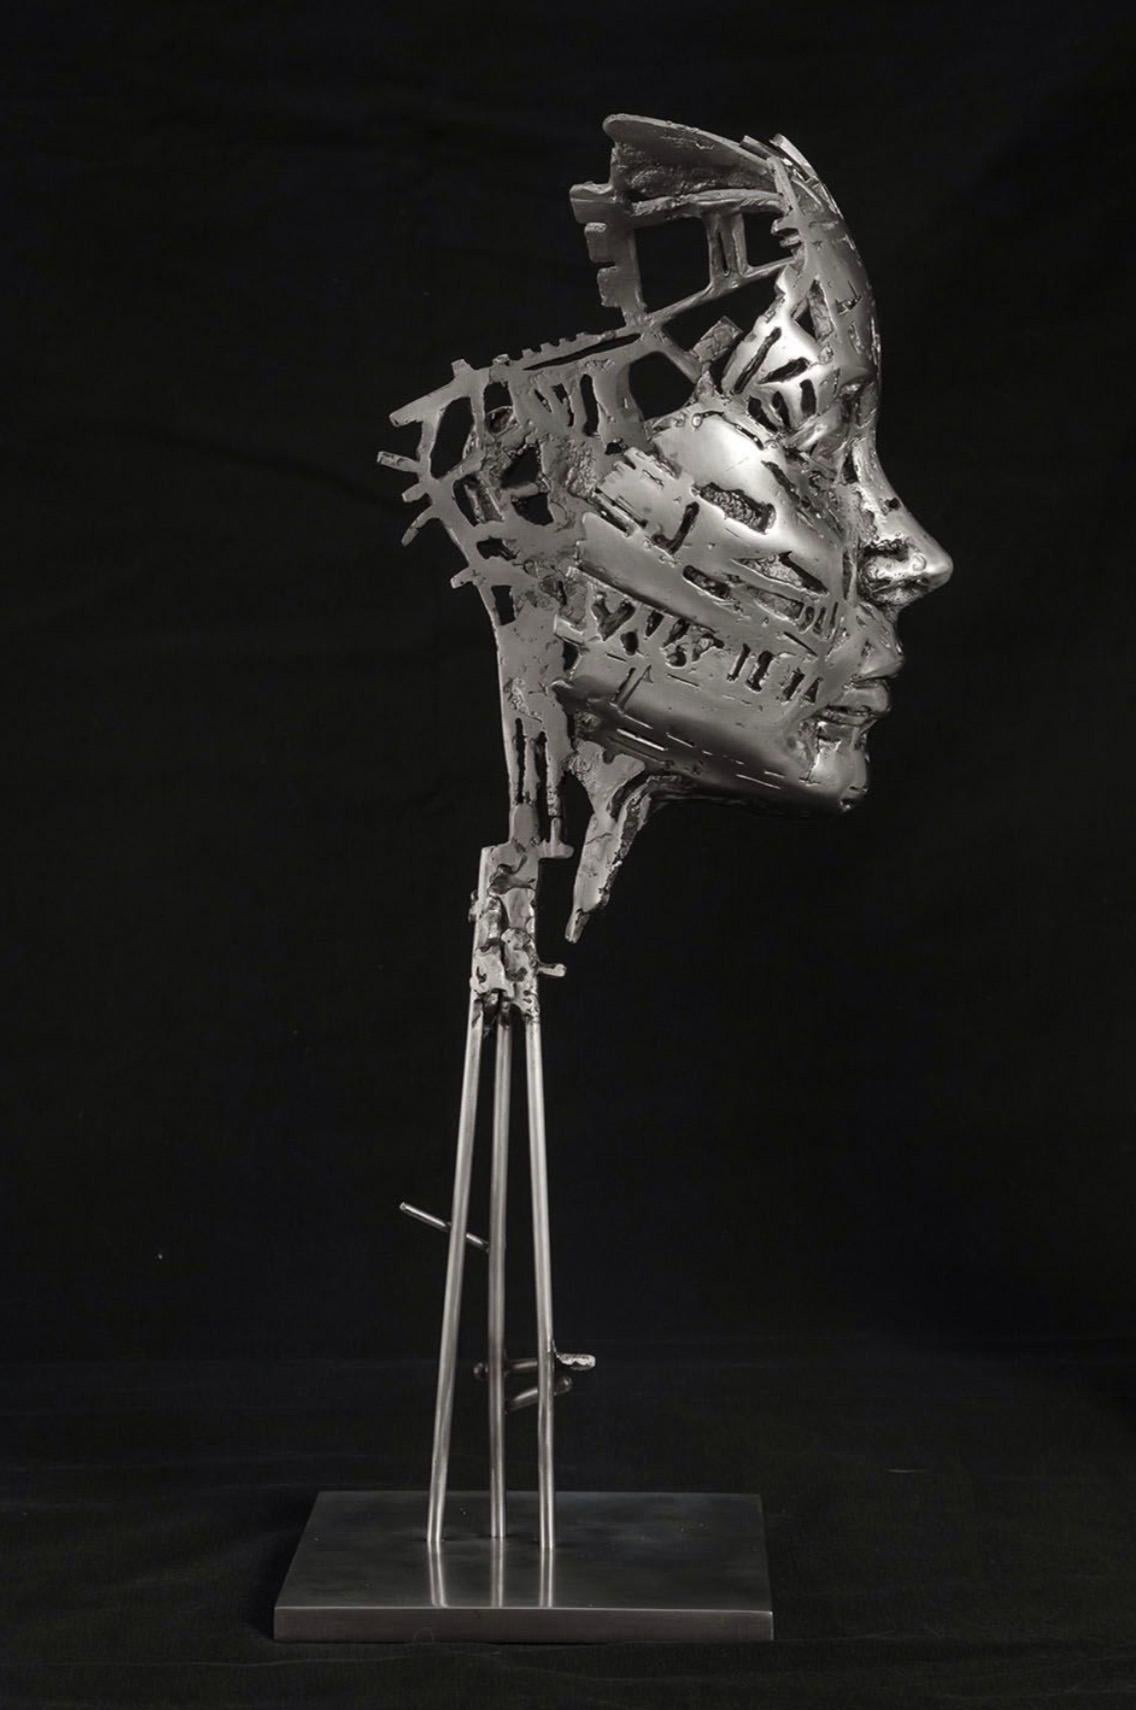 Irene - 21st Century, Contemporary, Figurative Sculpture, Steel, Portrait 2